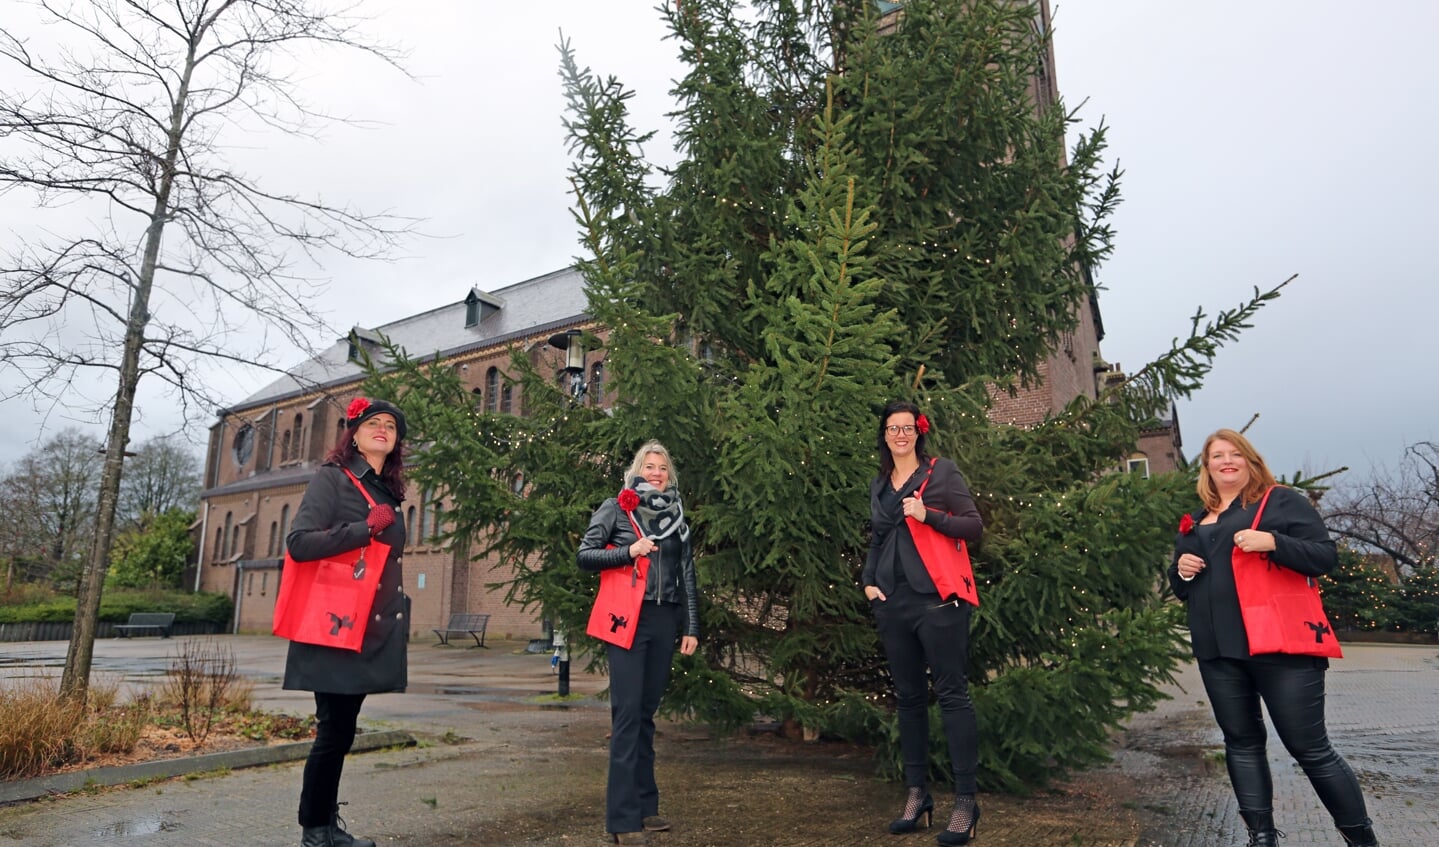 Vlnr. Liane Borst, Marlou Zuurbier, Linda Neeft en Arianne Moraal van Esposa hopen dat de kerstboom vol met wensen komt te hangen.